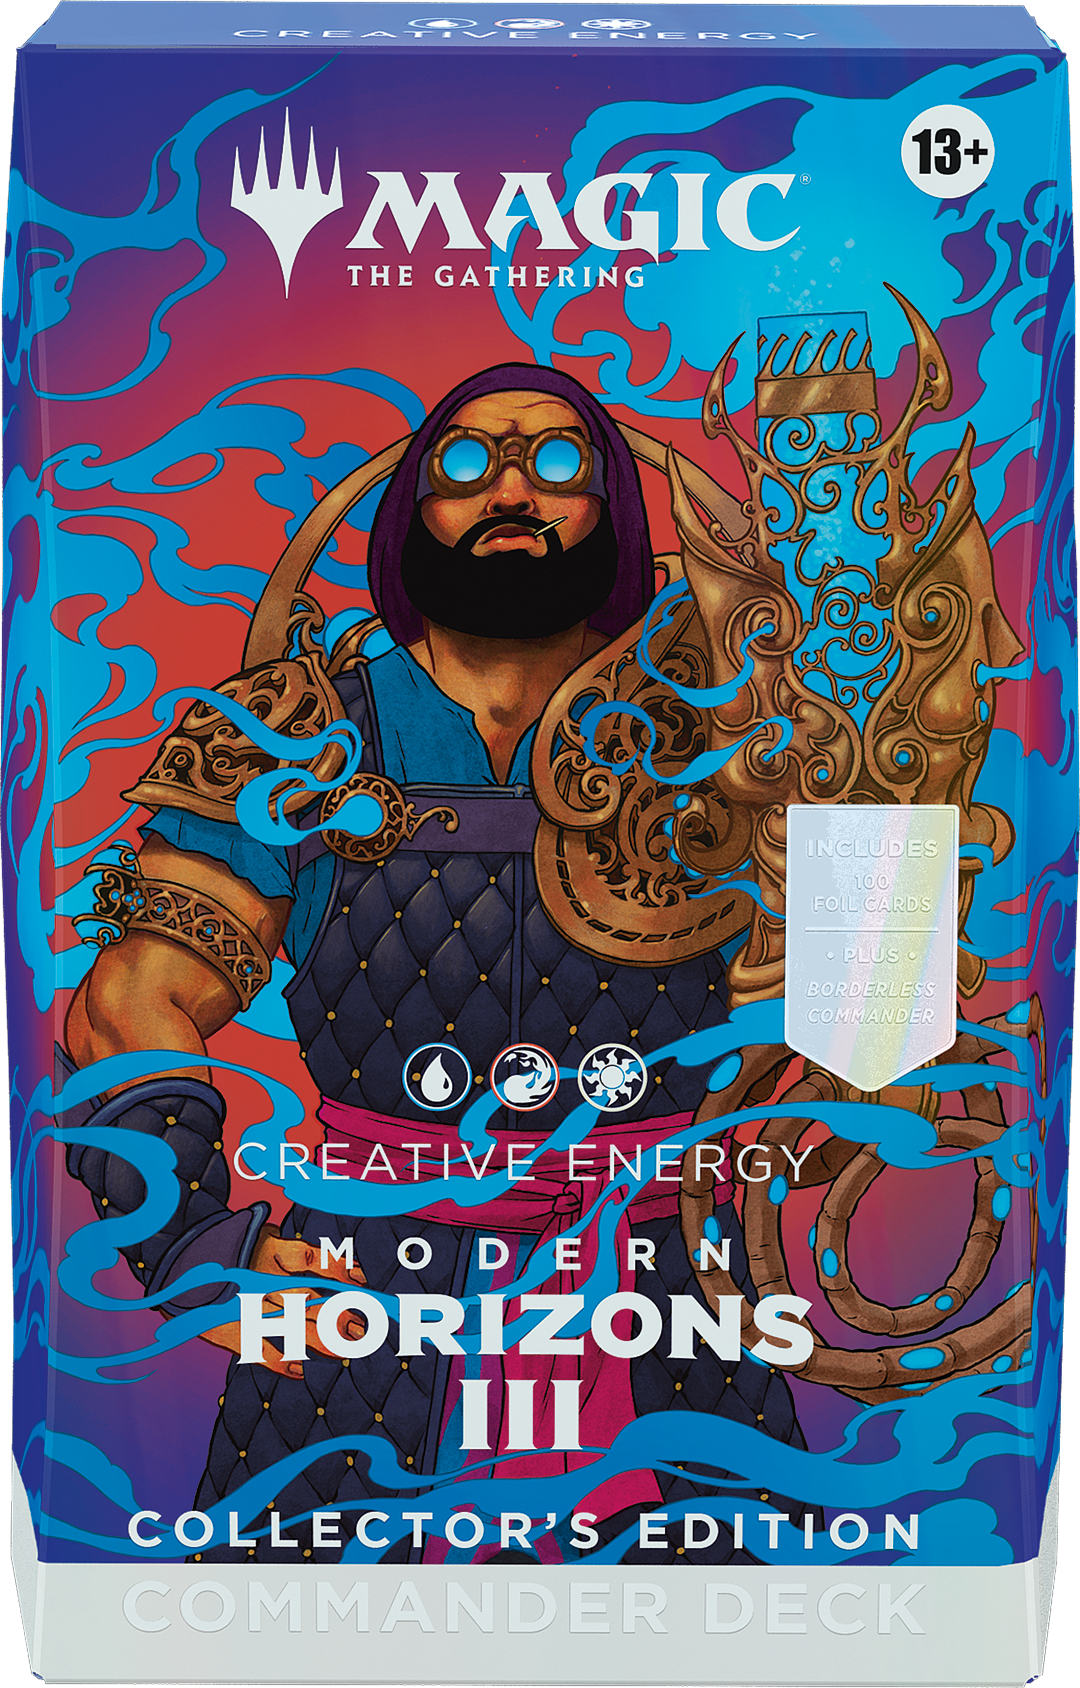 Creative Energy聚珍版